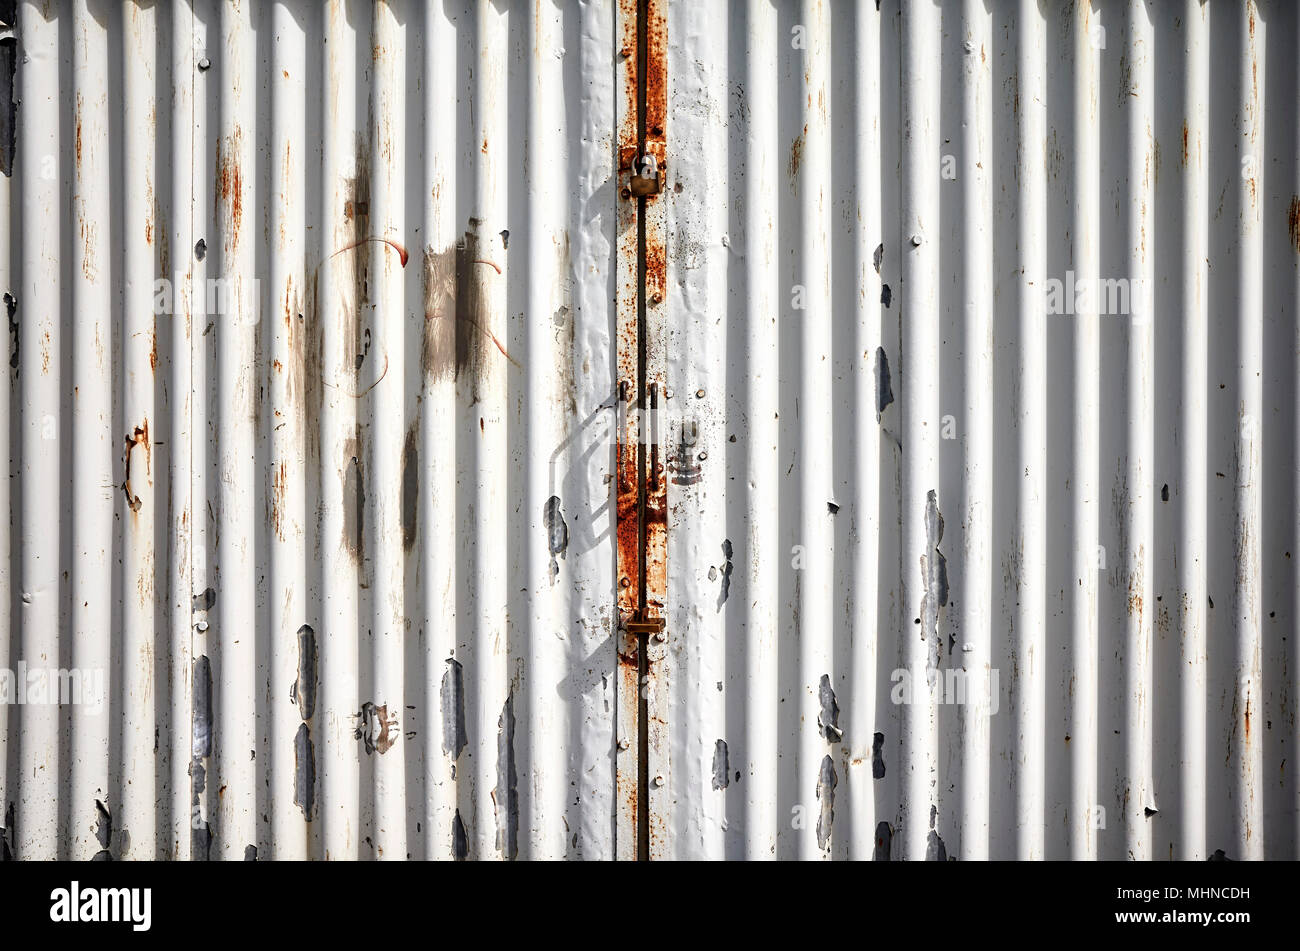 Garage corrugated metal door with peeling paint. Stock Photo